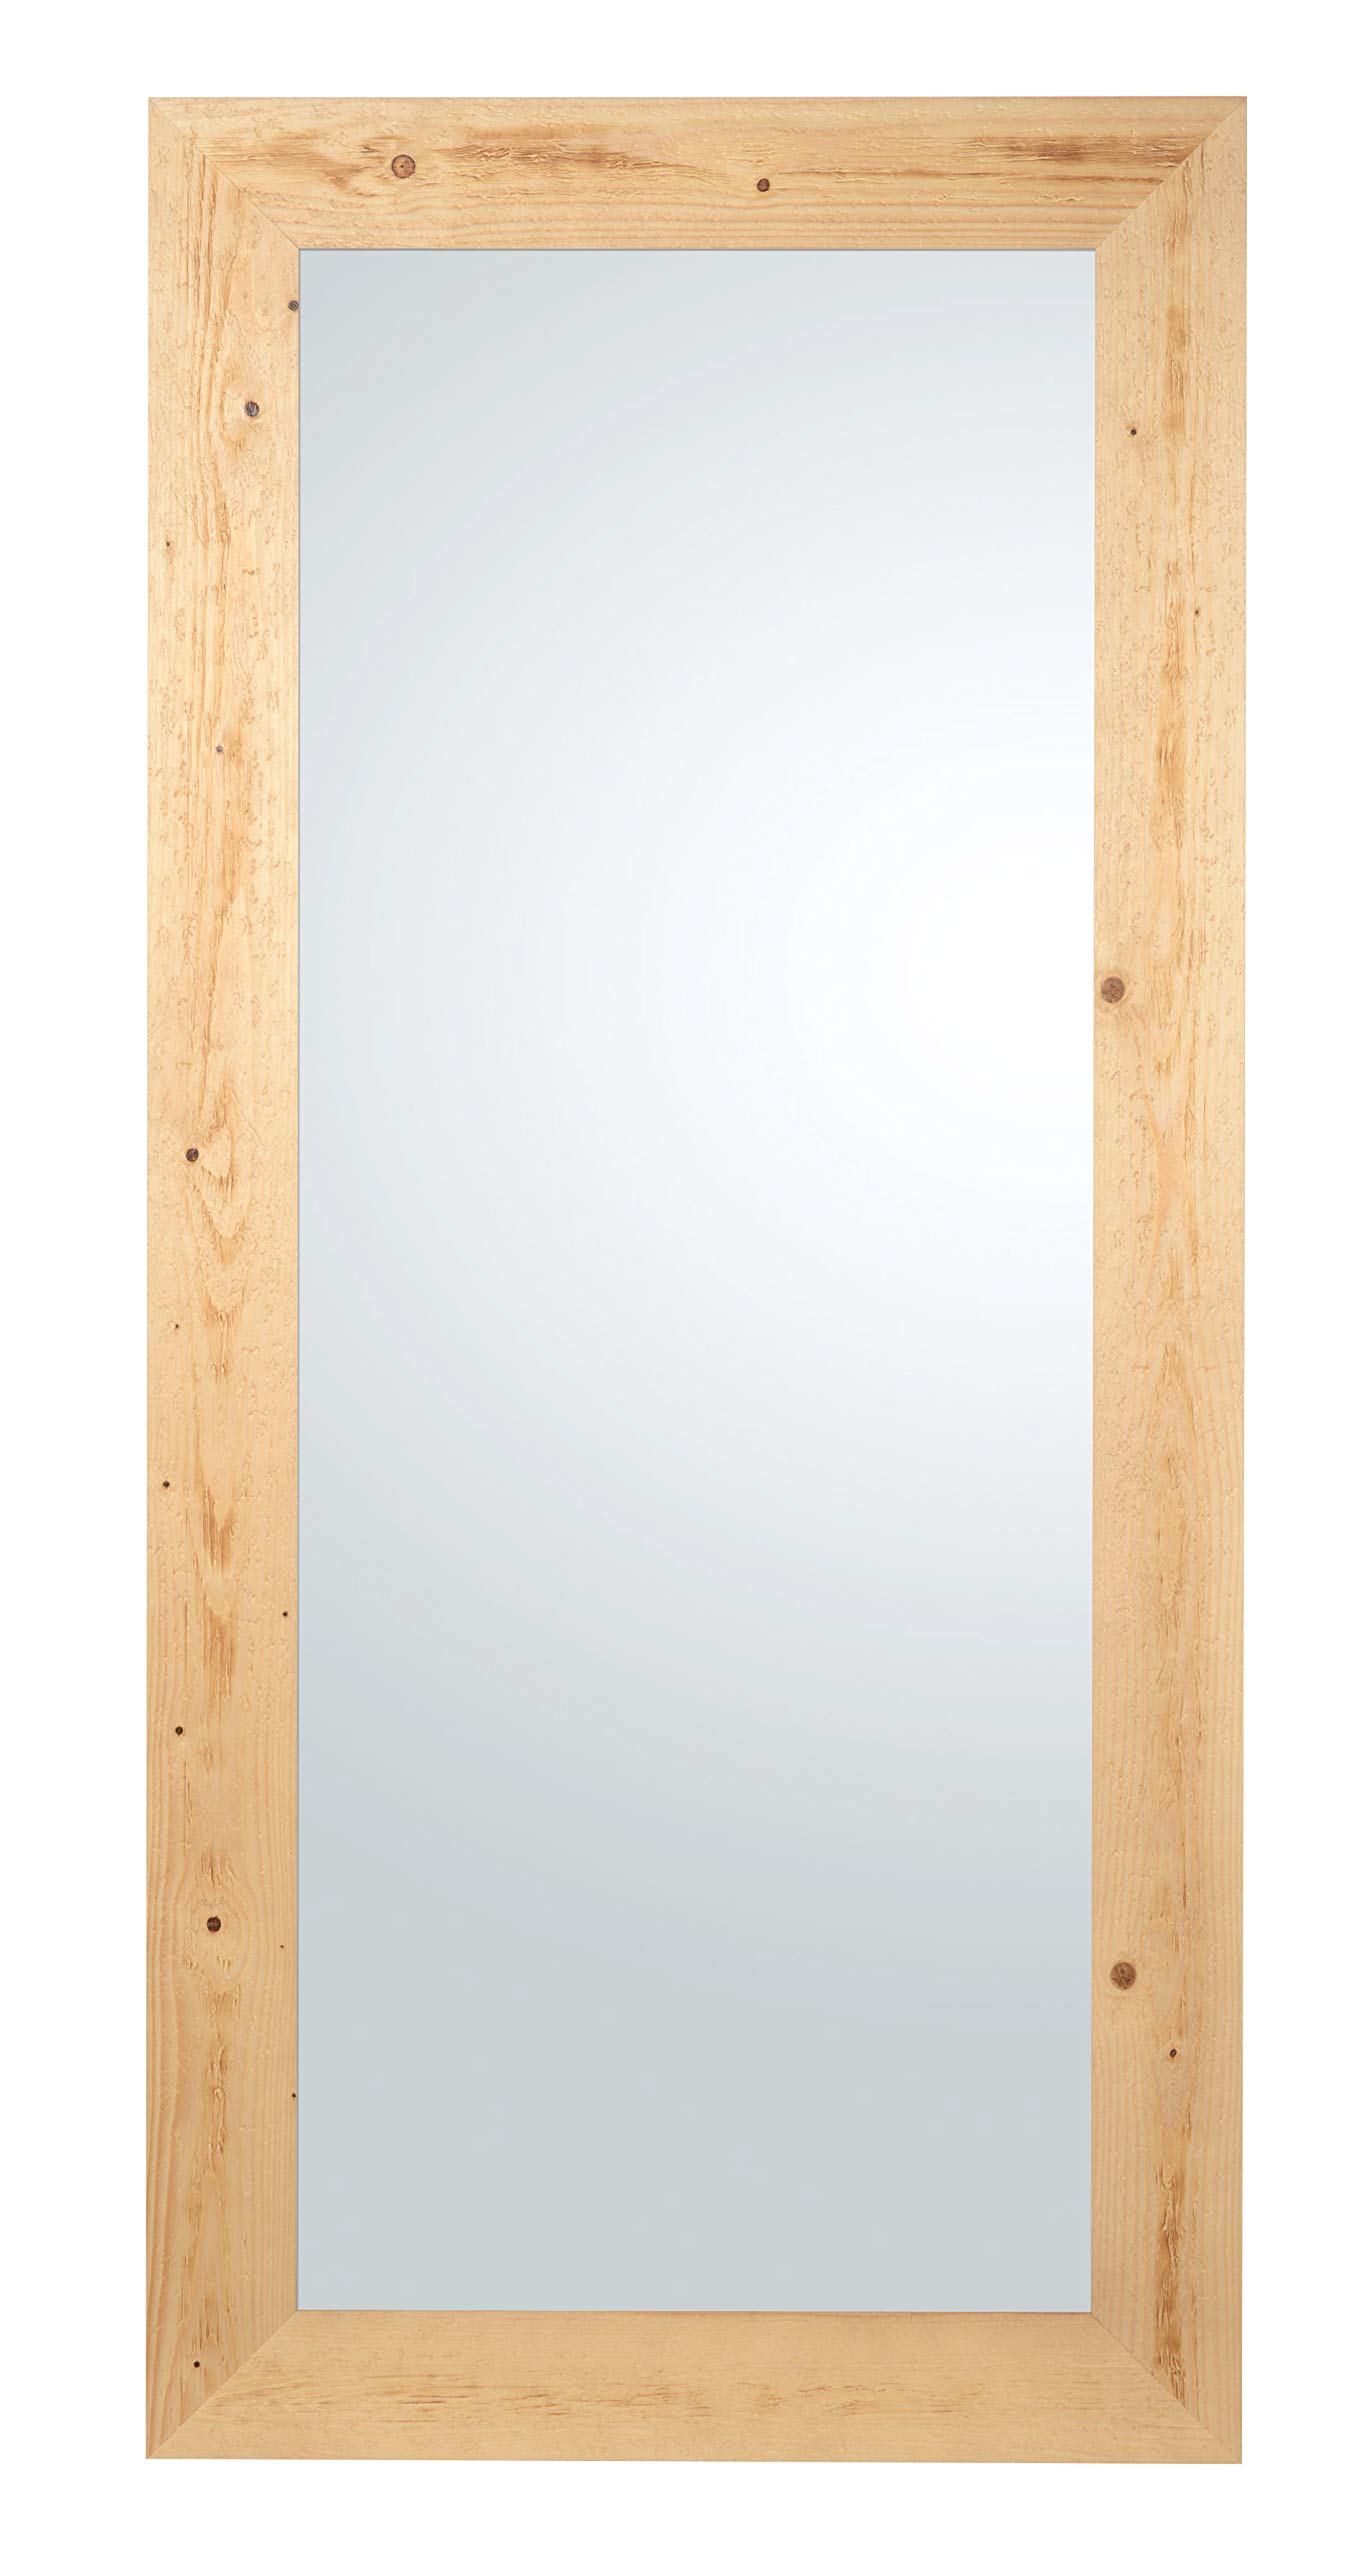 MO.WA Spiegel Wandspiegel Holzspiegel groß Ganzkörperspiegel 82x182, Spiegel groß, Wandspiegel Natur, Holz Flurspiegel, Garderobenspiegel Modern Rustikal